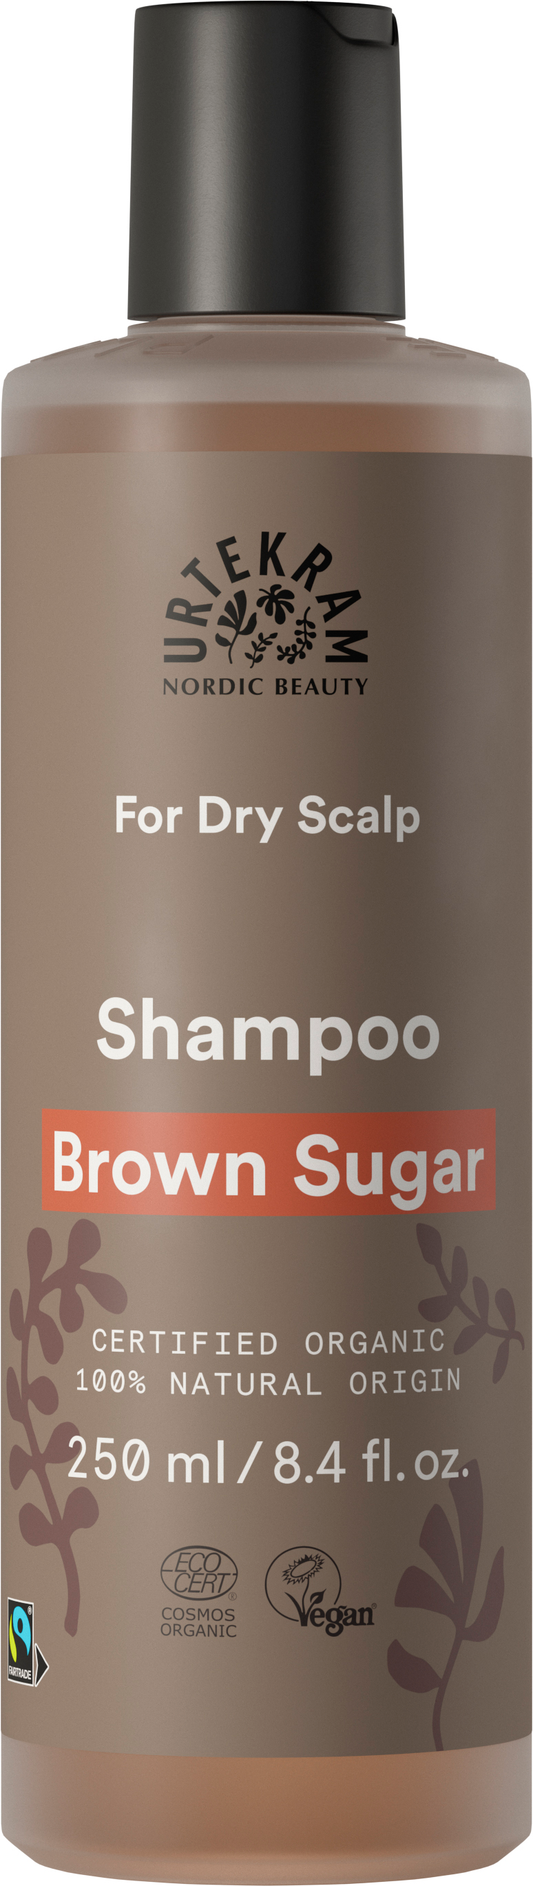 Brown Sugar Shampoo FT 28263A